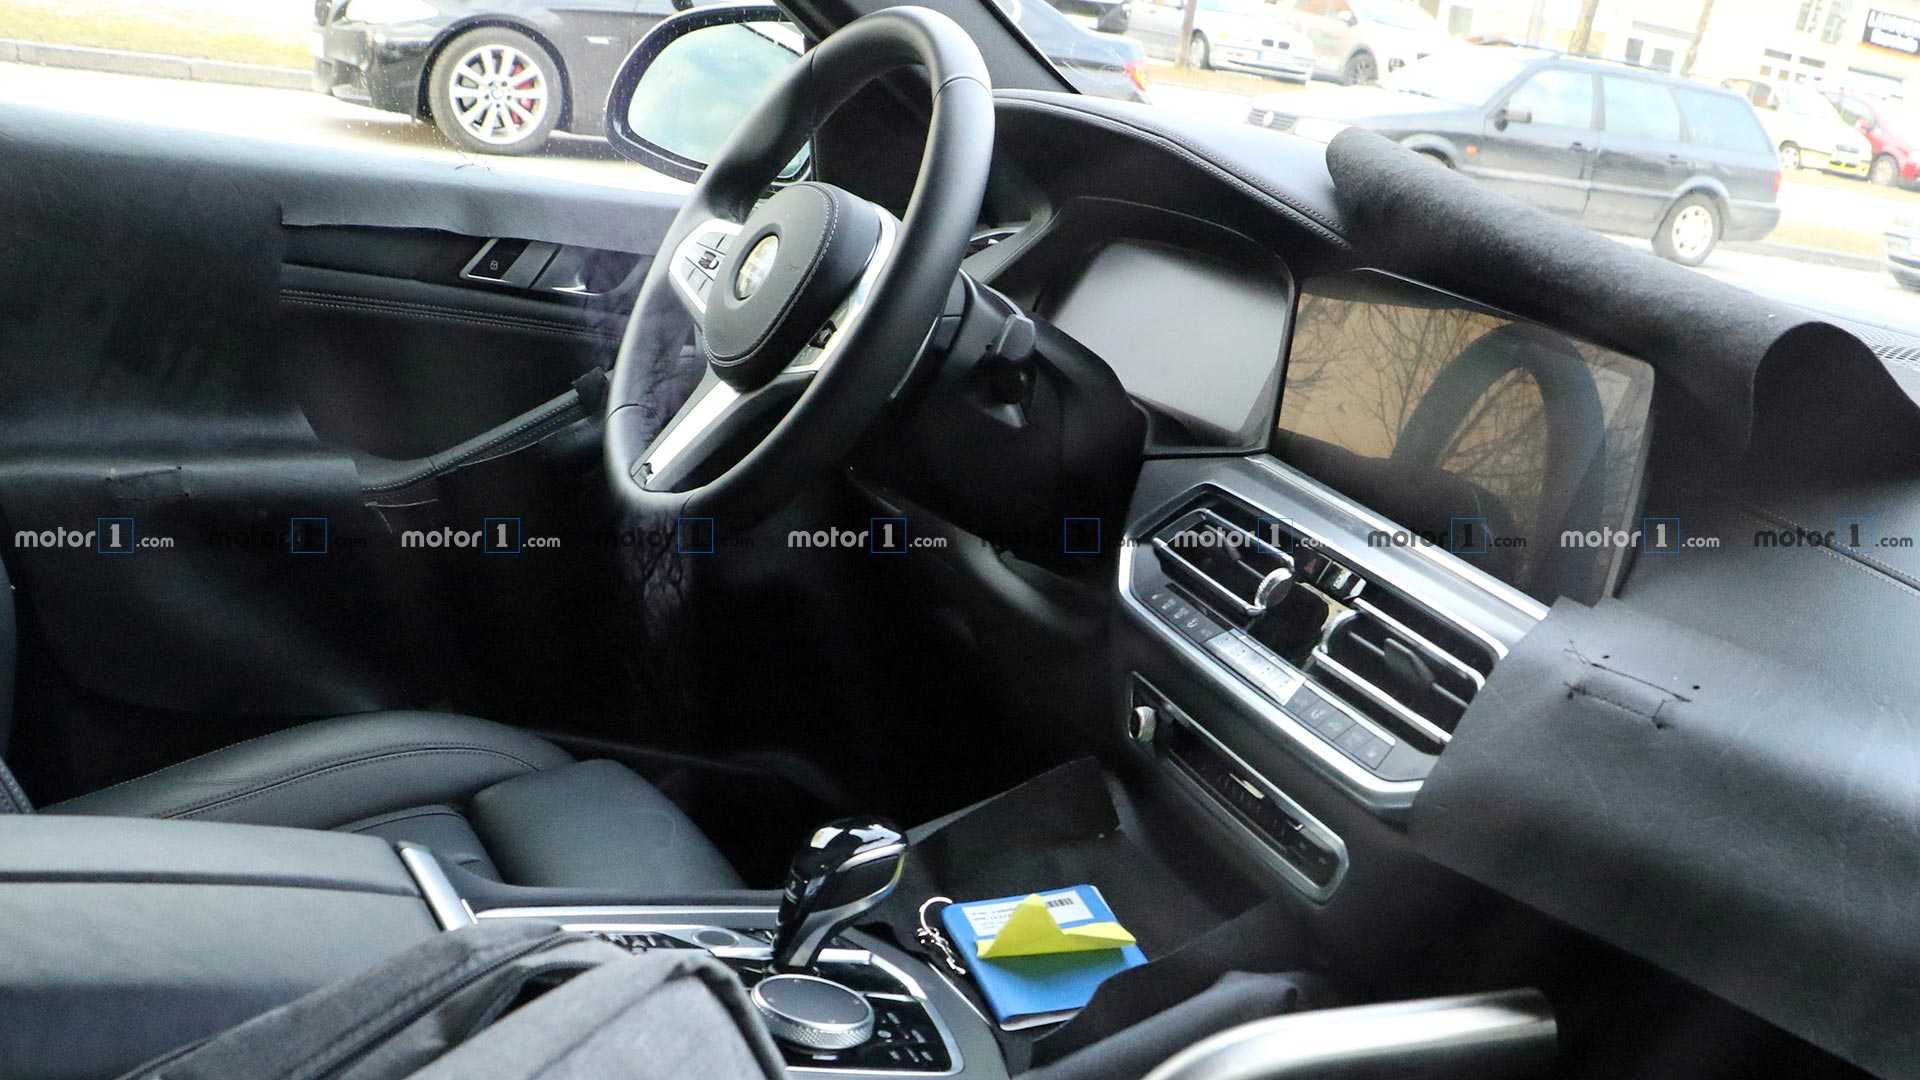 海外汽车媒体曝光了一组宝马全新X6 M50i谍照图